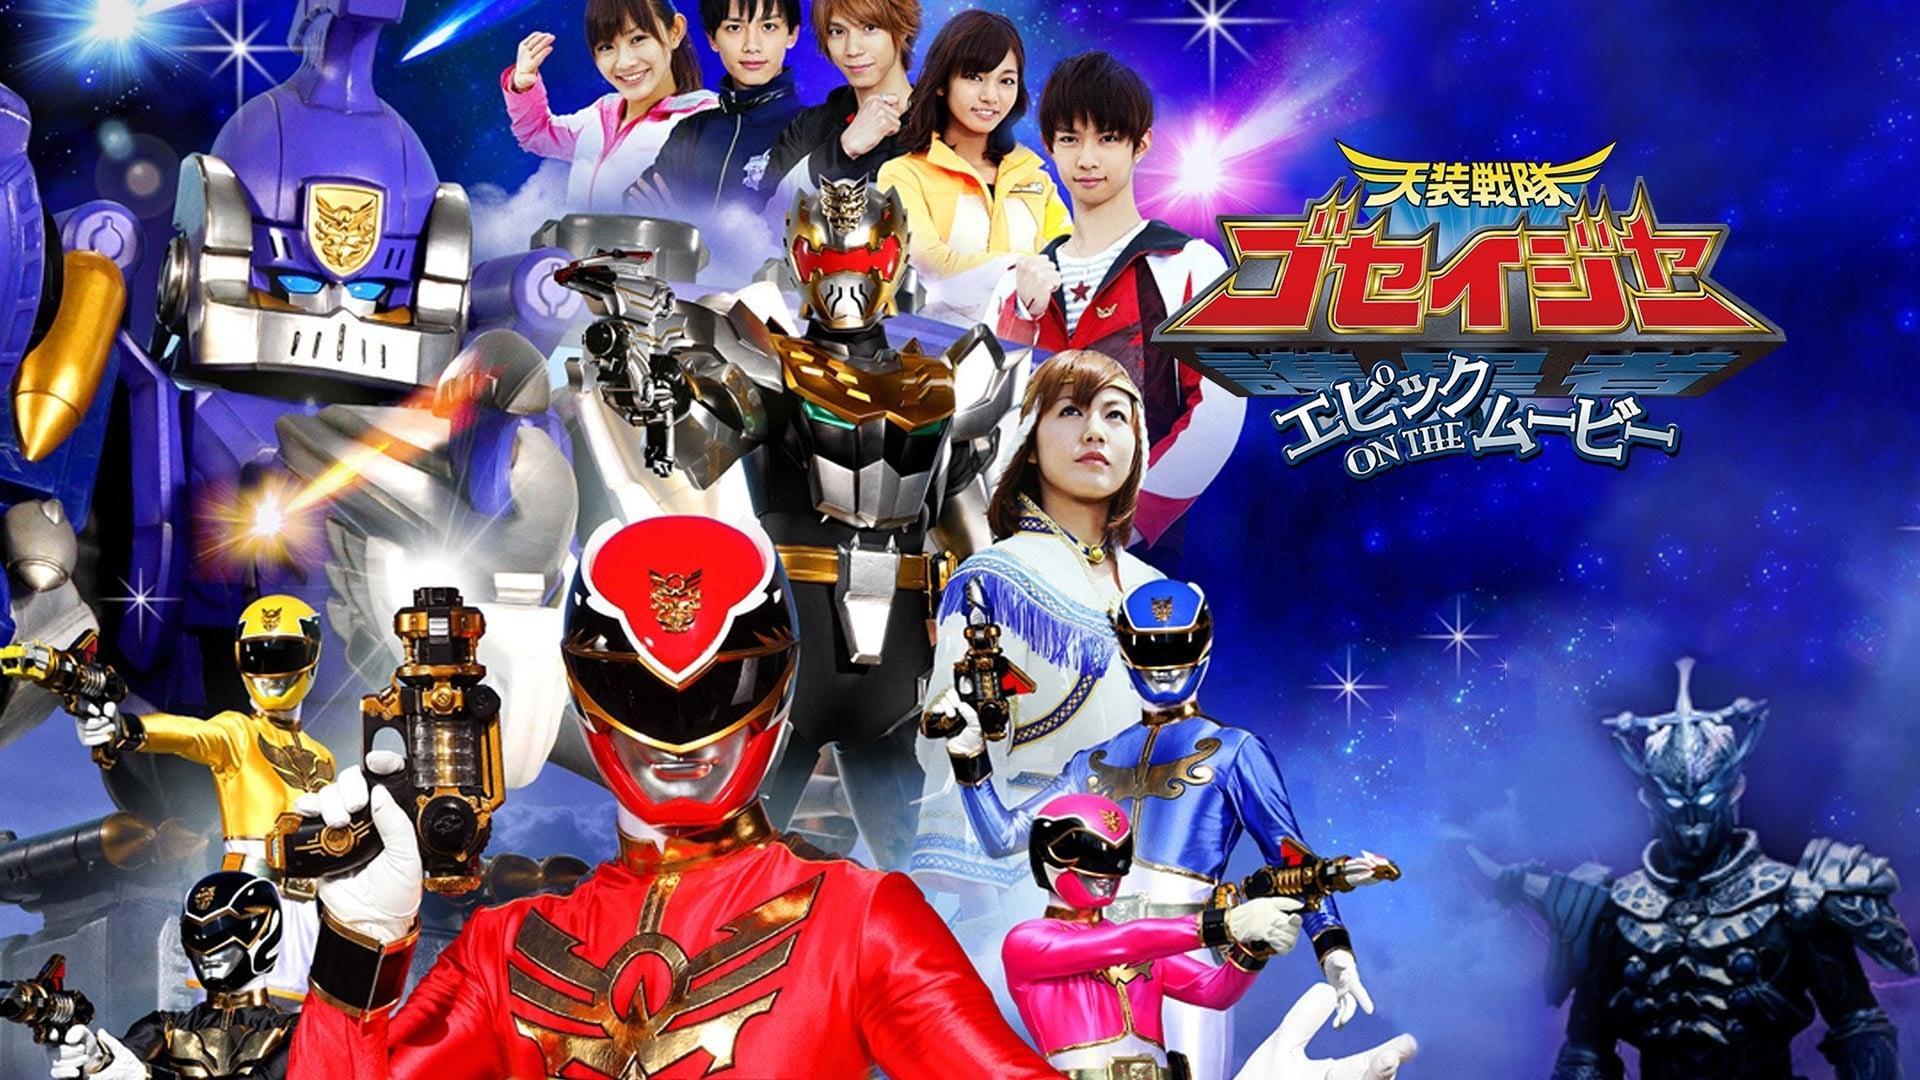 Tensou Sentai Goseiger: Epic on The Movie backdrop